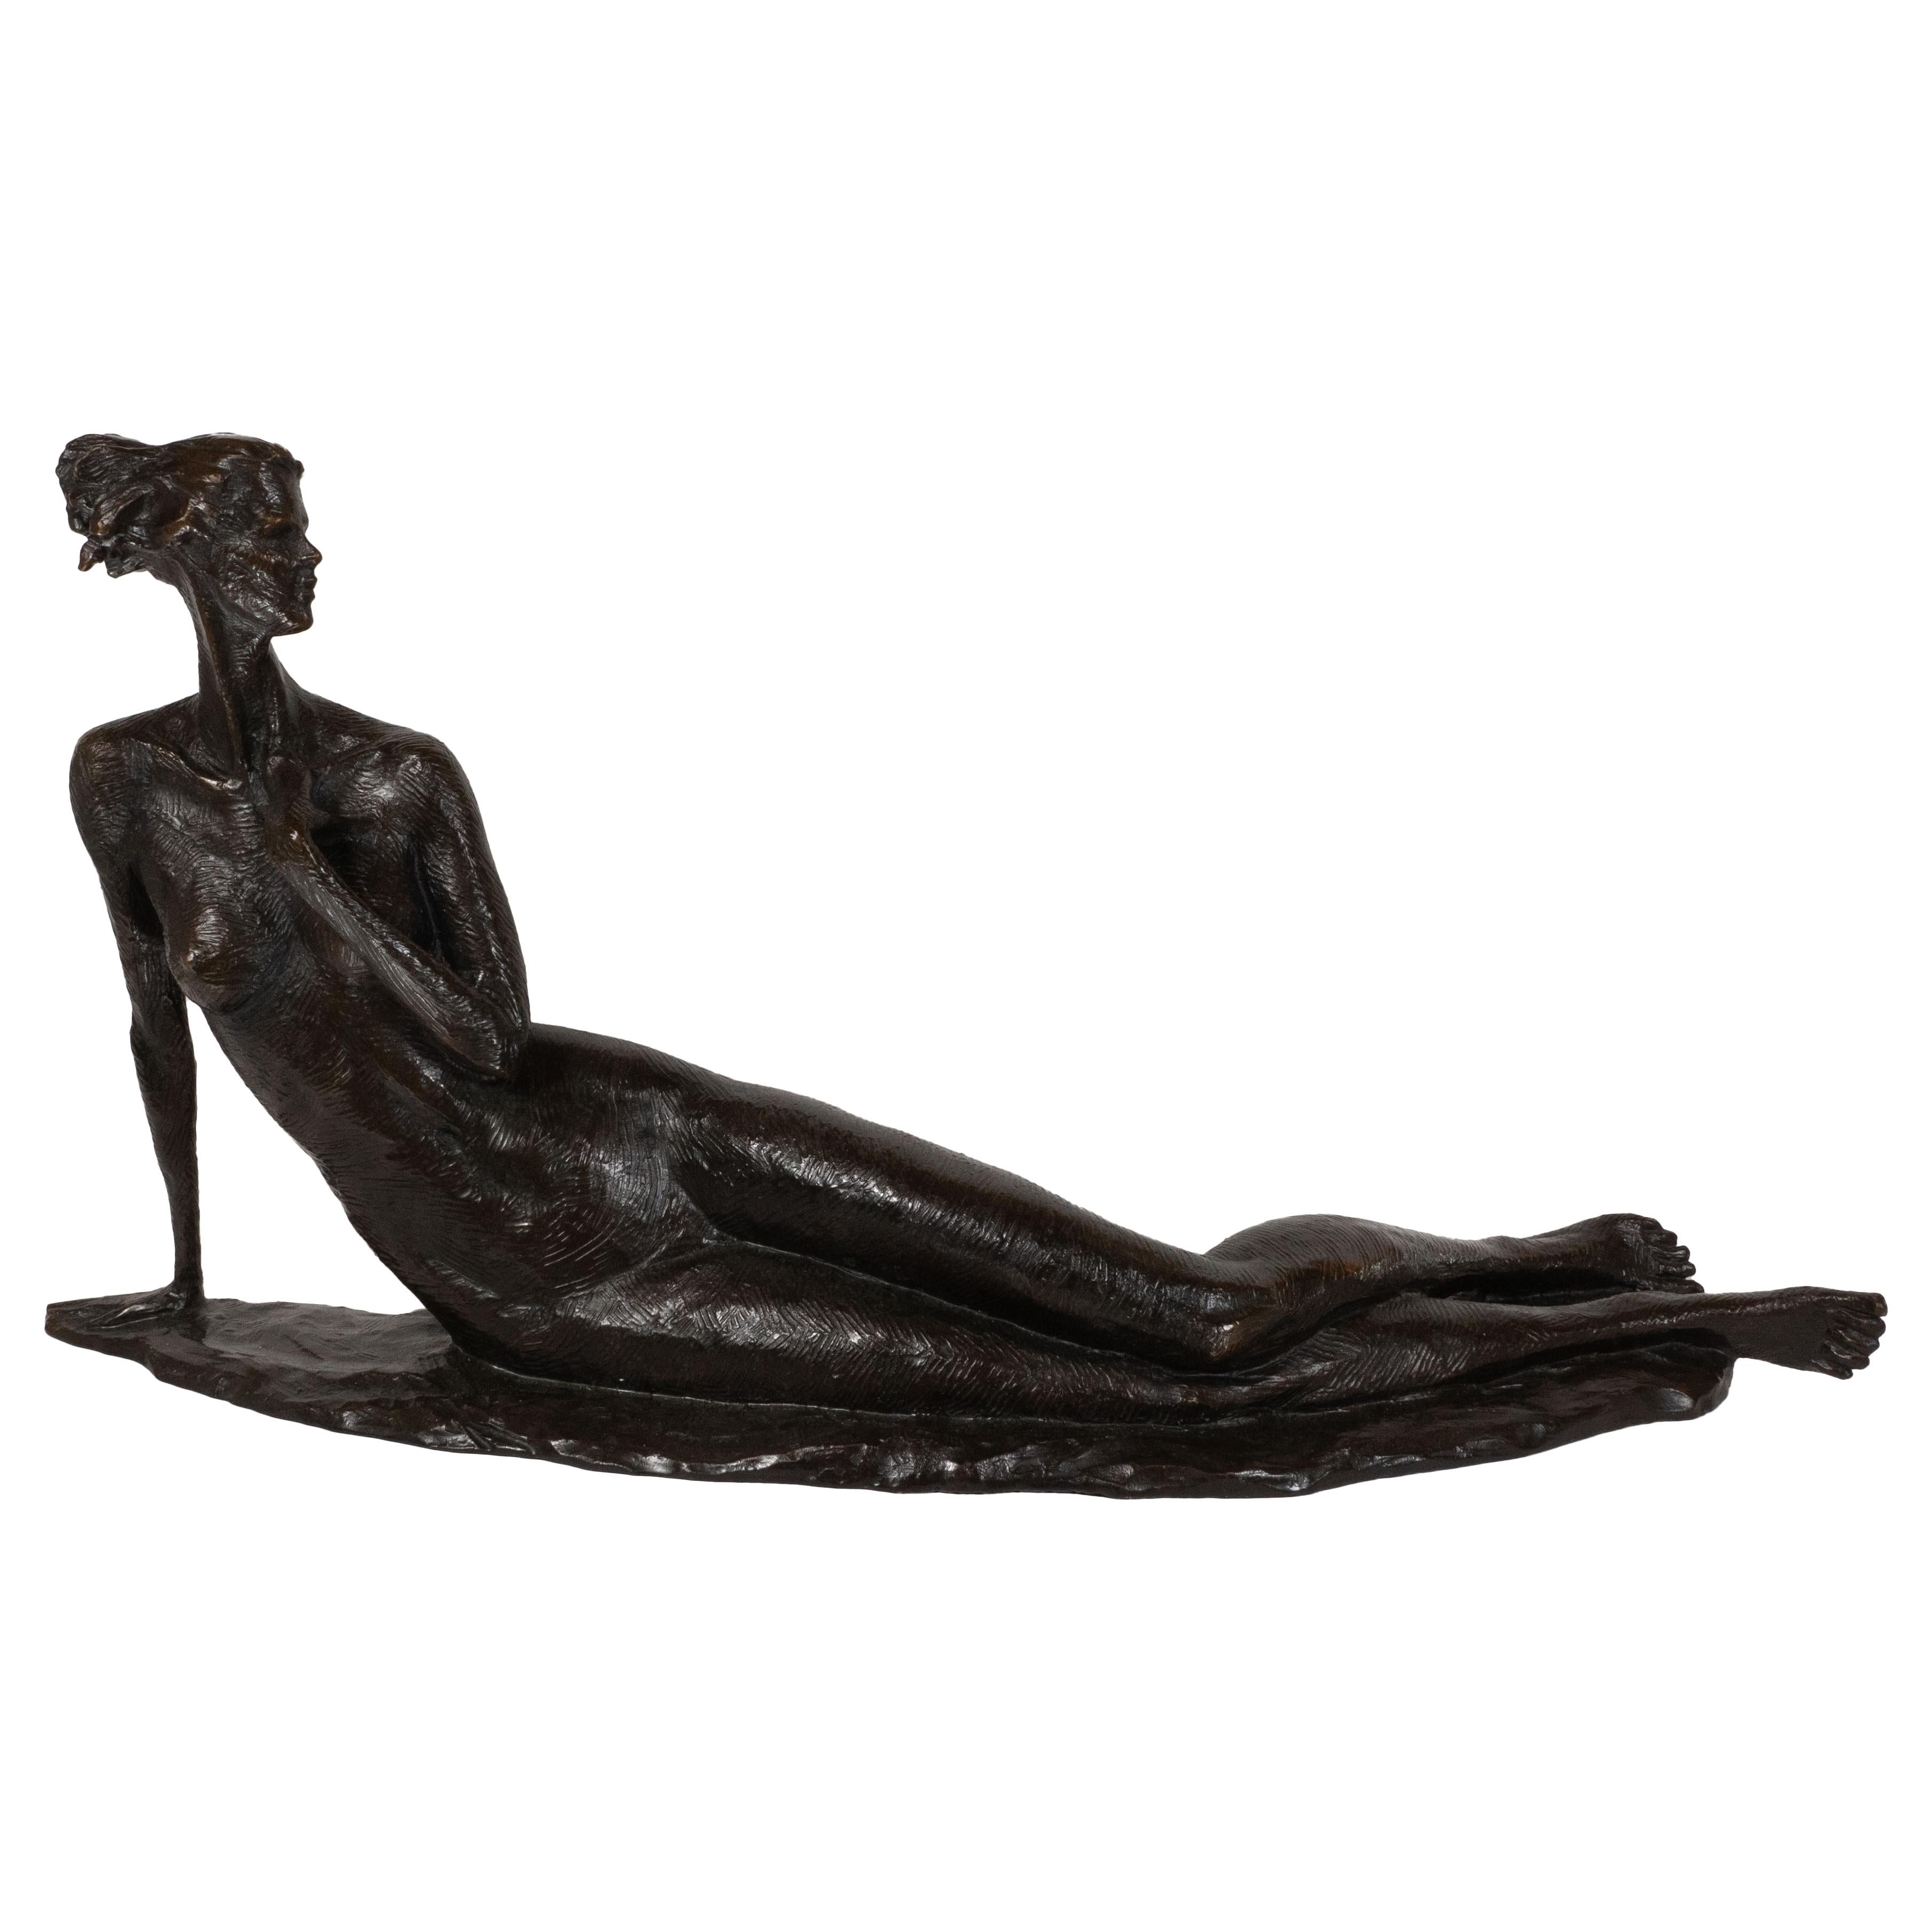 Tom Corbin Figurative Sculpture – Reclining Nude